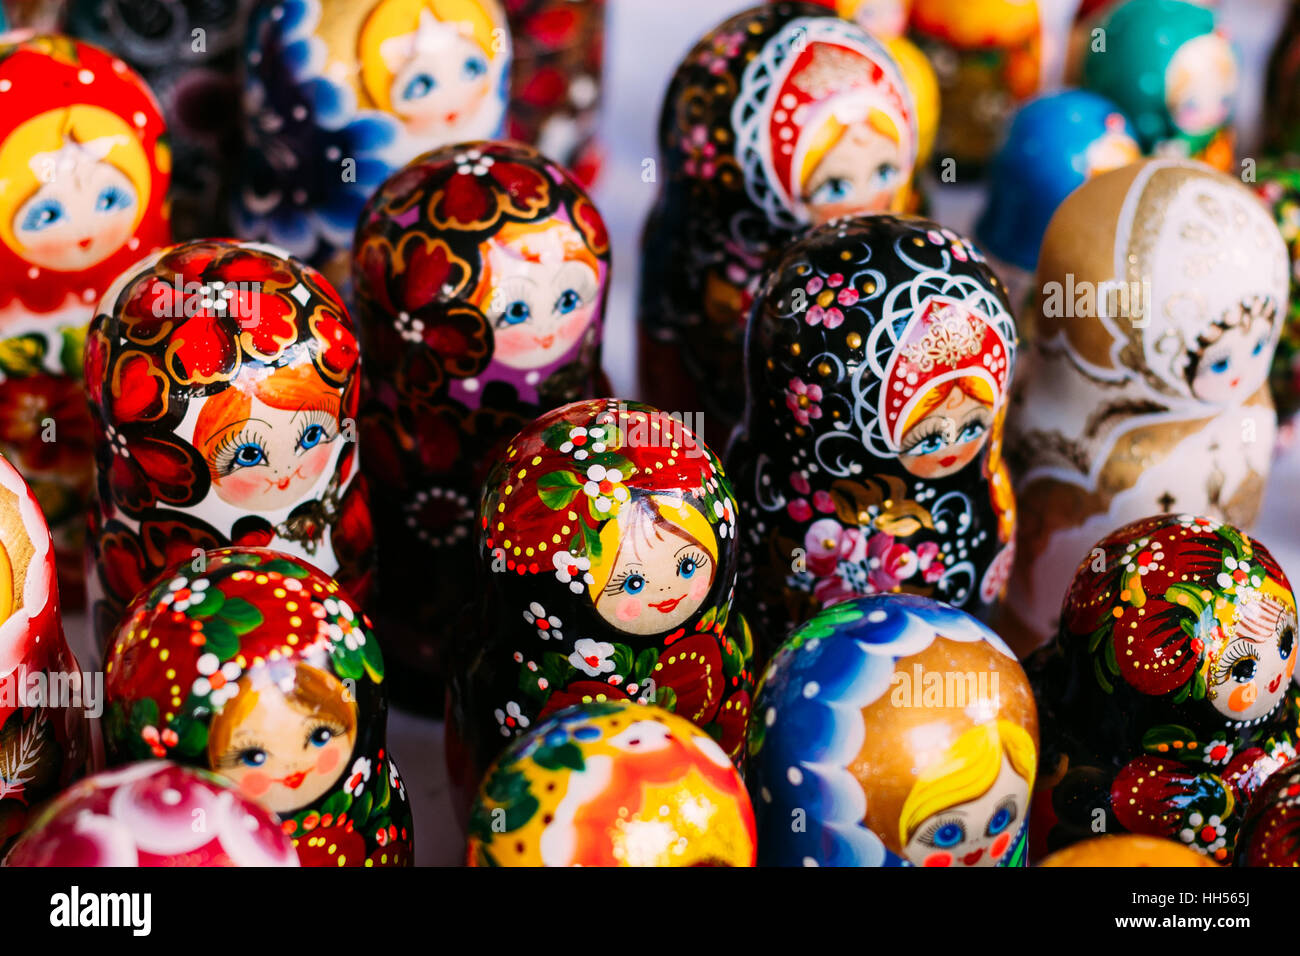 Schöne bunte russischen Nesting Dolls Matreshka am Markt. Matrioshka ist Leute kulturelles Symbol der Russischen Föderation. Hölzerne Puppe Matroschka Stockfoto